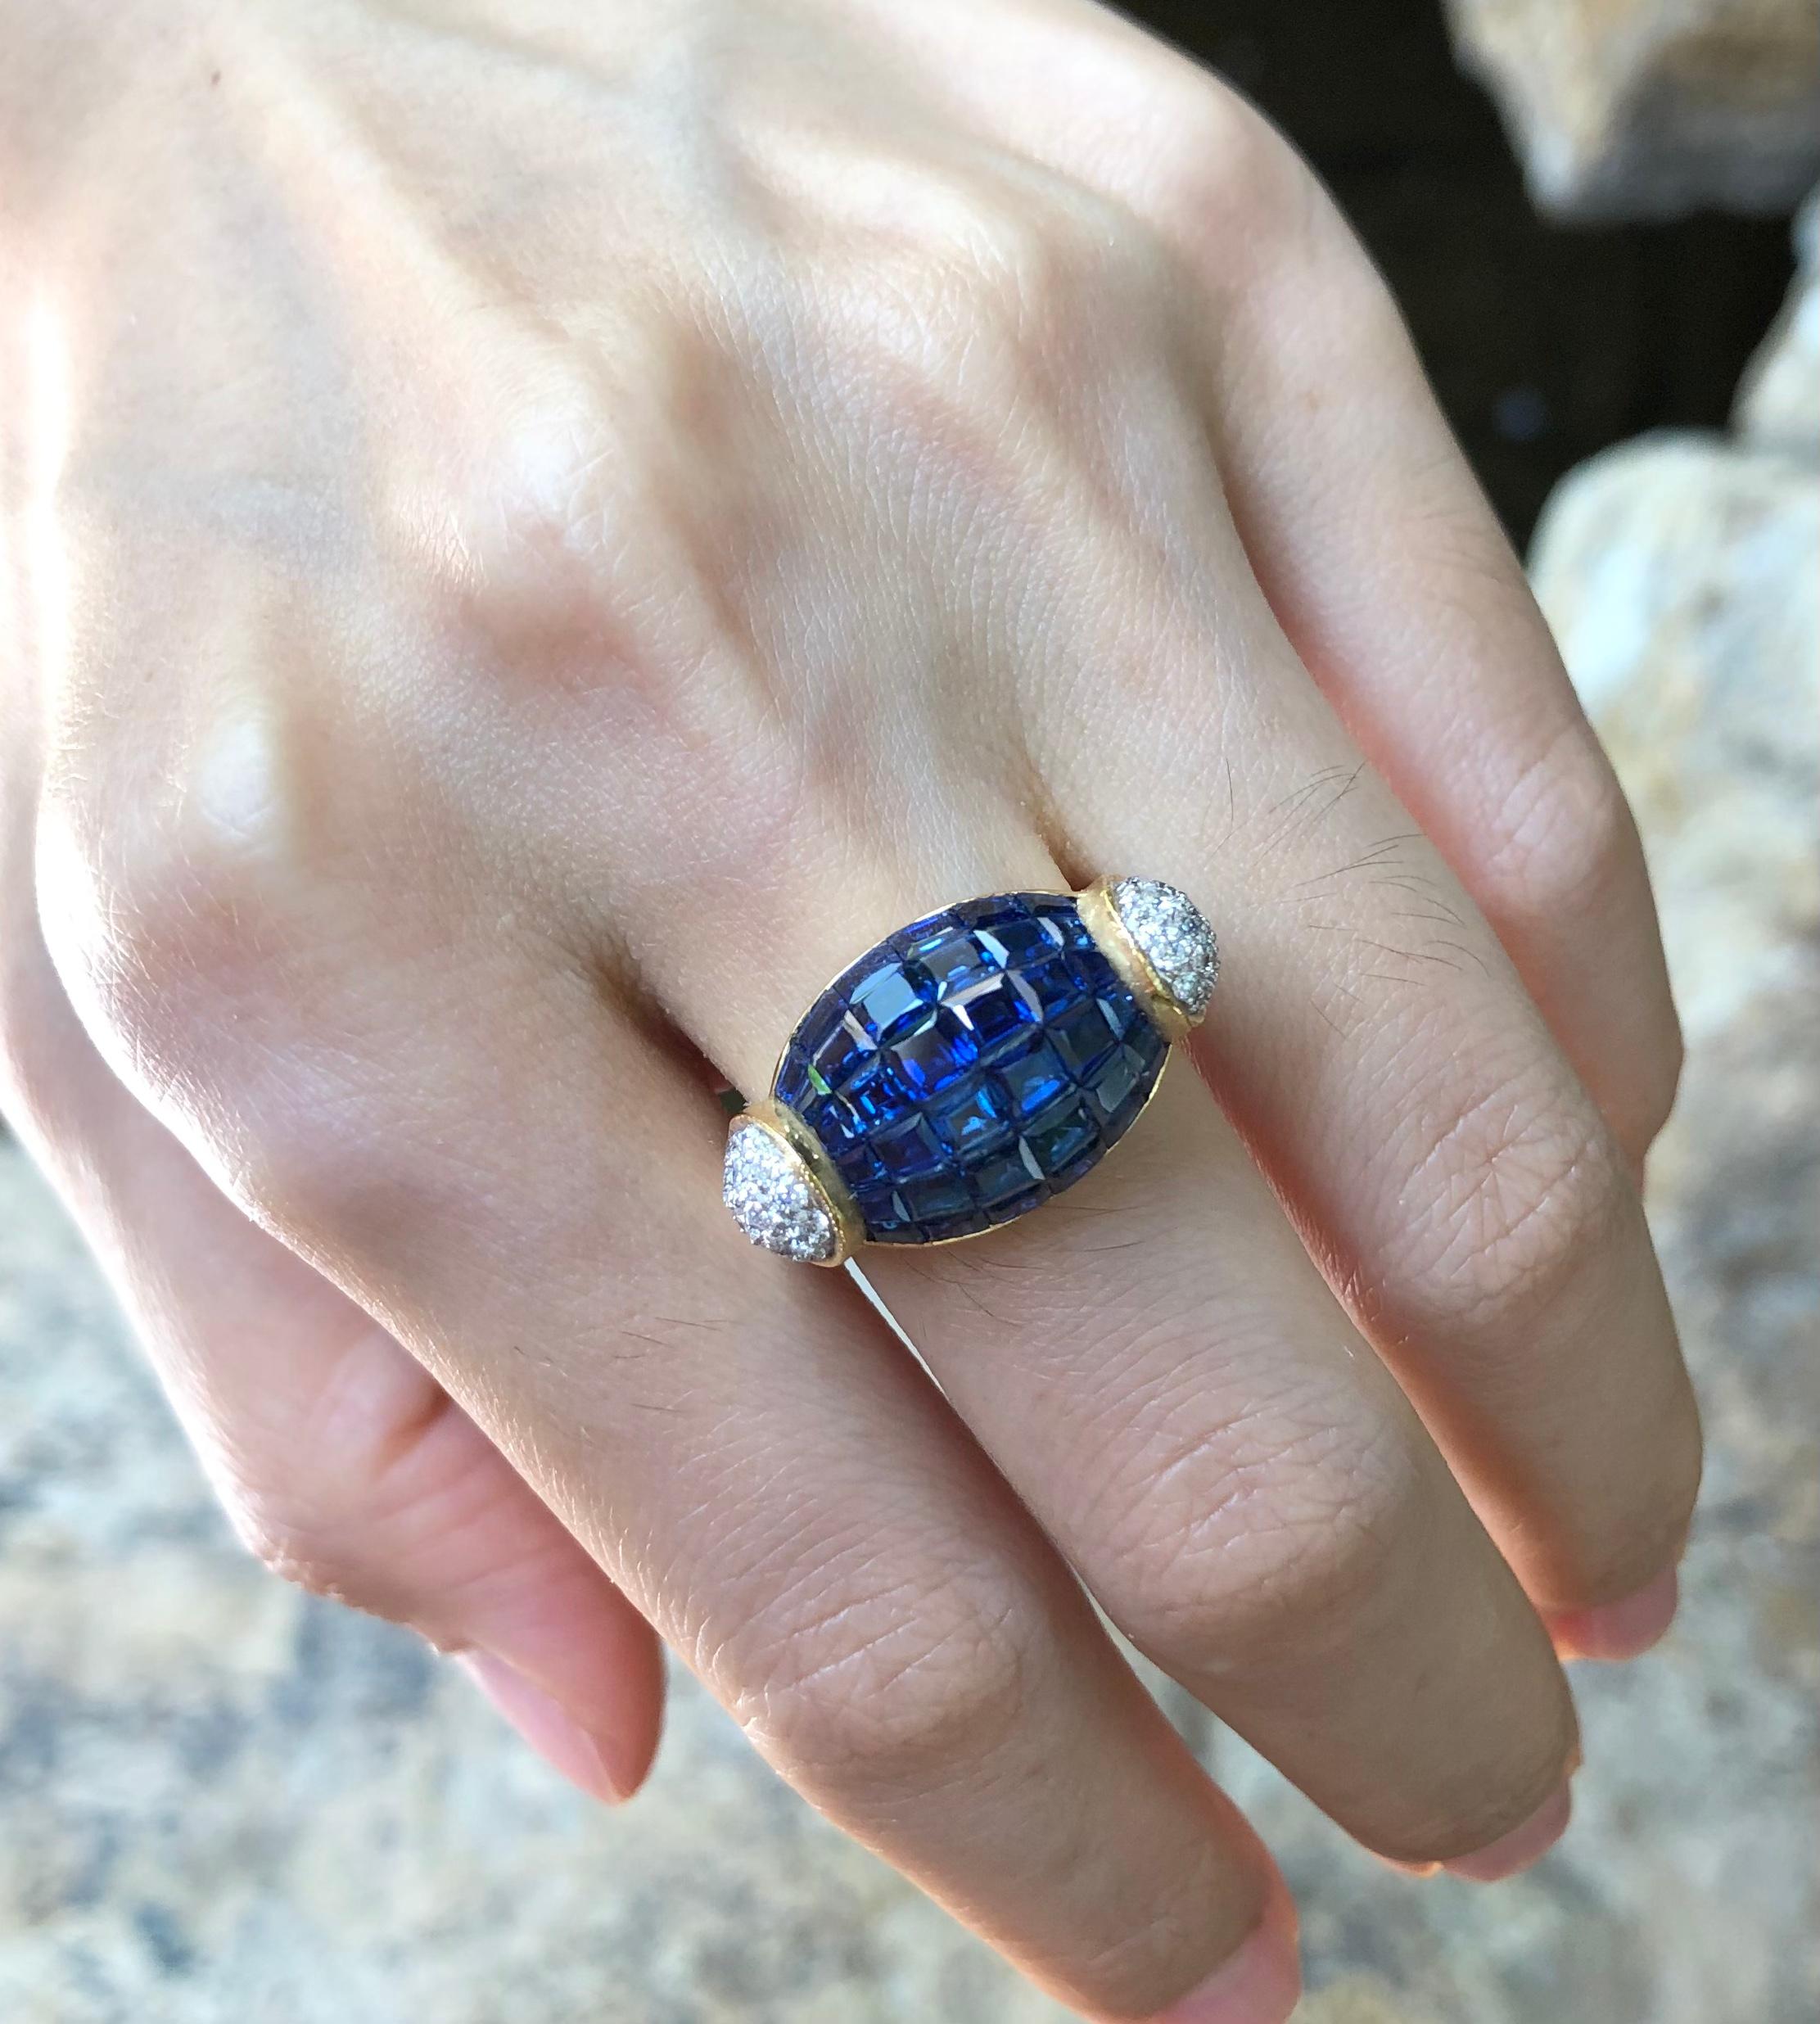 Bague avec saphir bleu 6,83 carats et diamant 0,48 carat en or 18 carats

Largeur :  2.3 cm 
Longueur :  1.3 cm
Taille de l'anneau : 54
Poids total : 12,37 grammes

